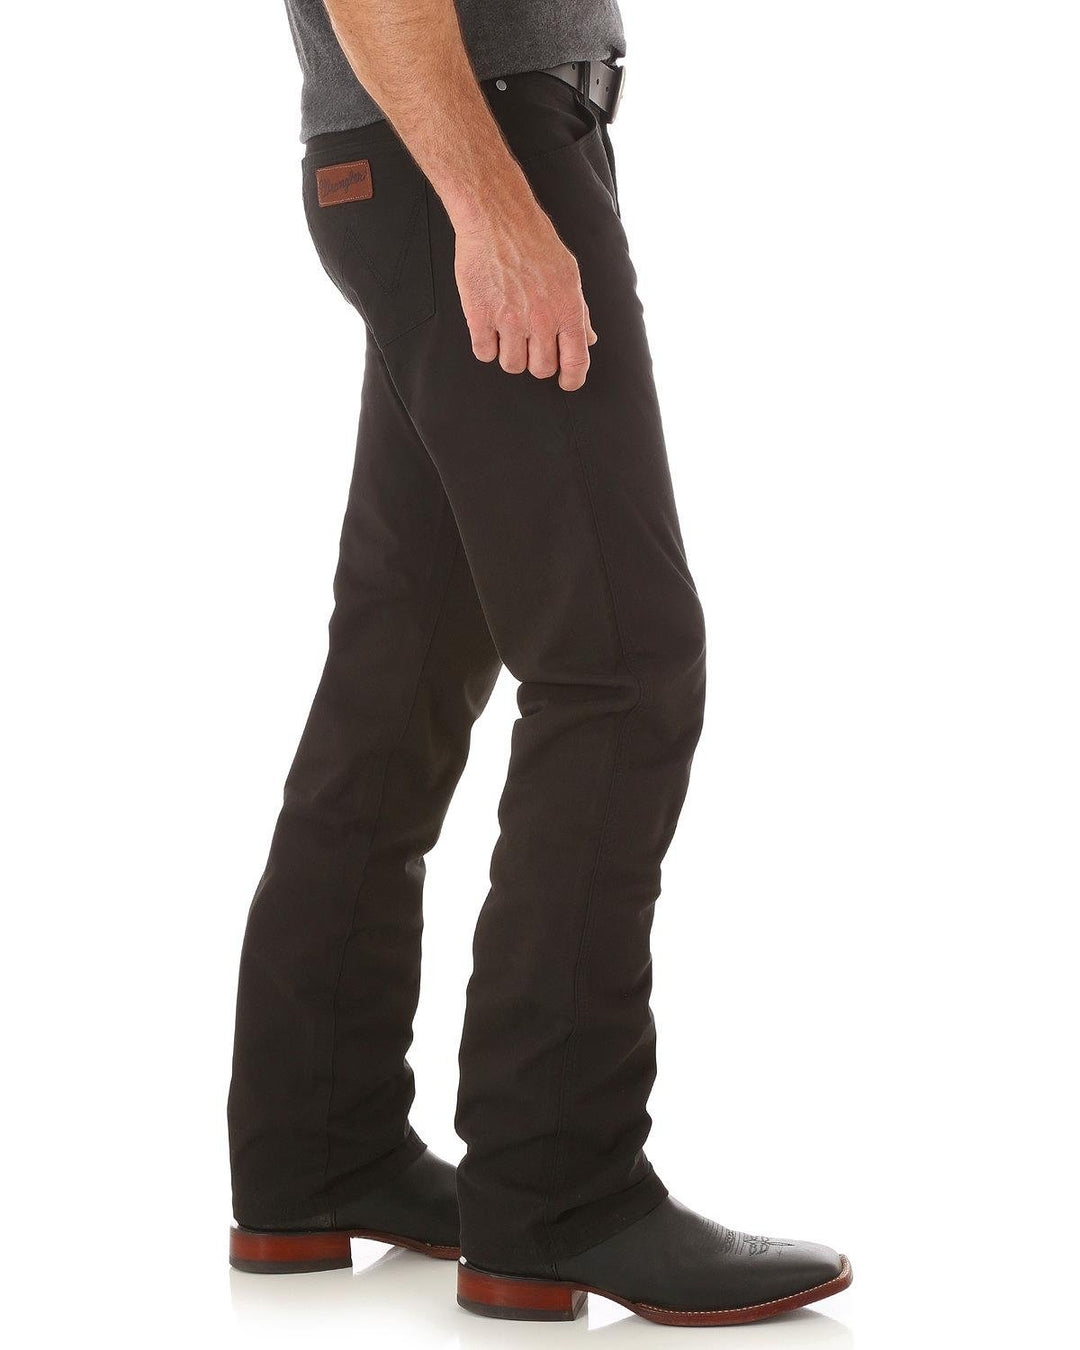 Wrangler Men's Retro Slim Fit Straight Leg Jean, Black, 32W x 34L